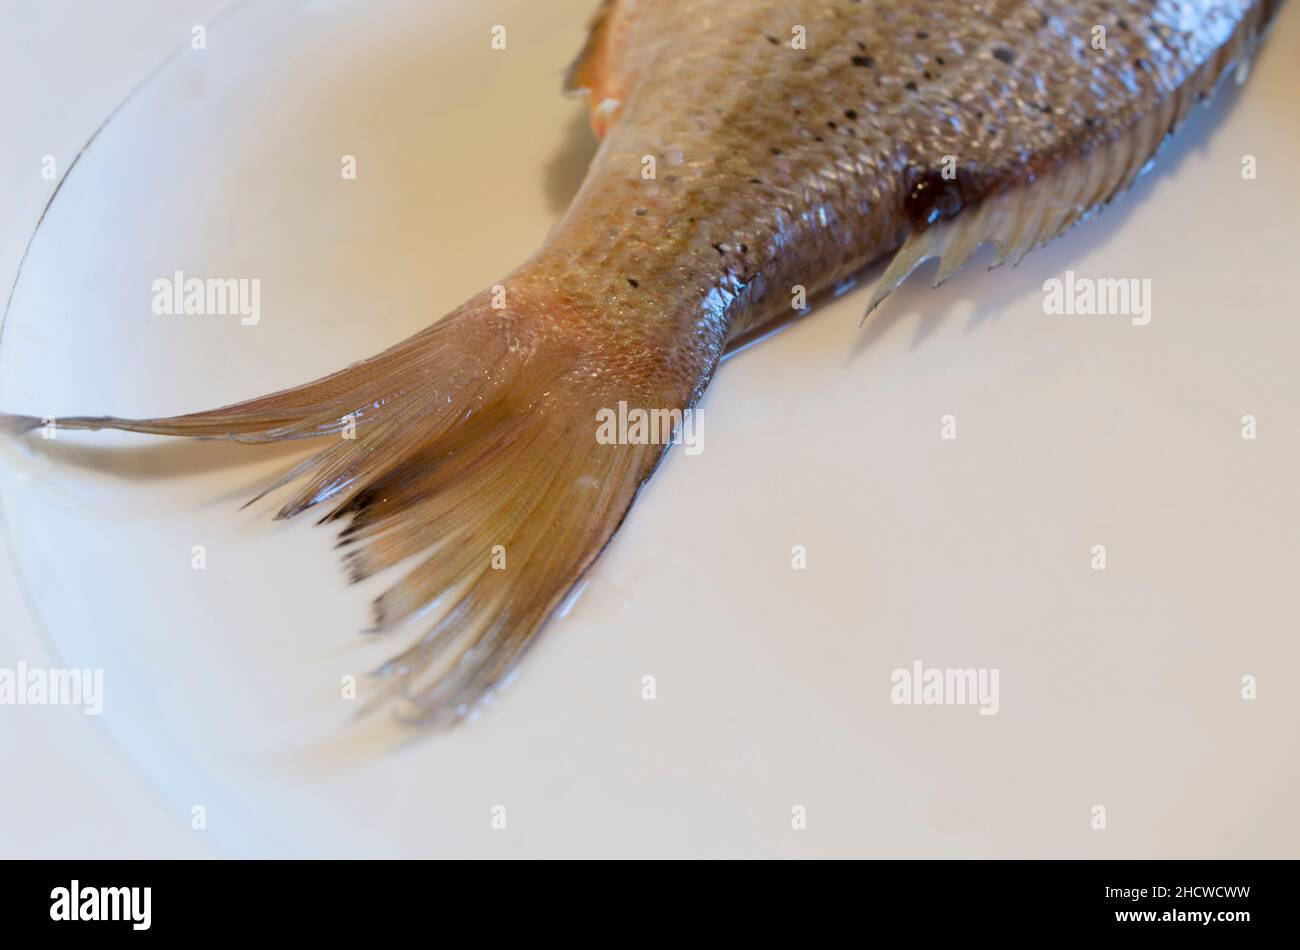 Queue de poisson d'eau salée Dentex Dentex, dentex commun sur une plaque blanche, fruits de mer crus de la mer Adriatique, cuisine dalmate Banque D'Images